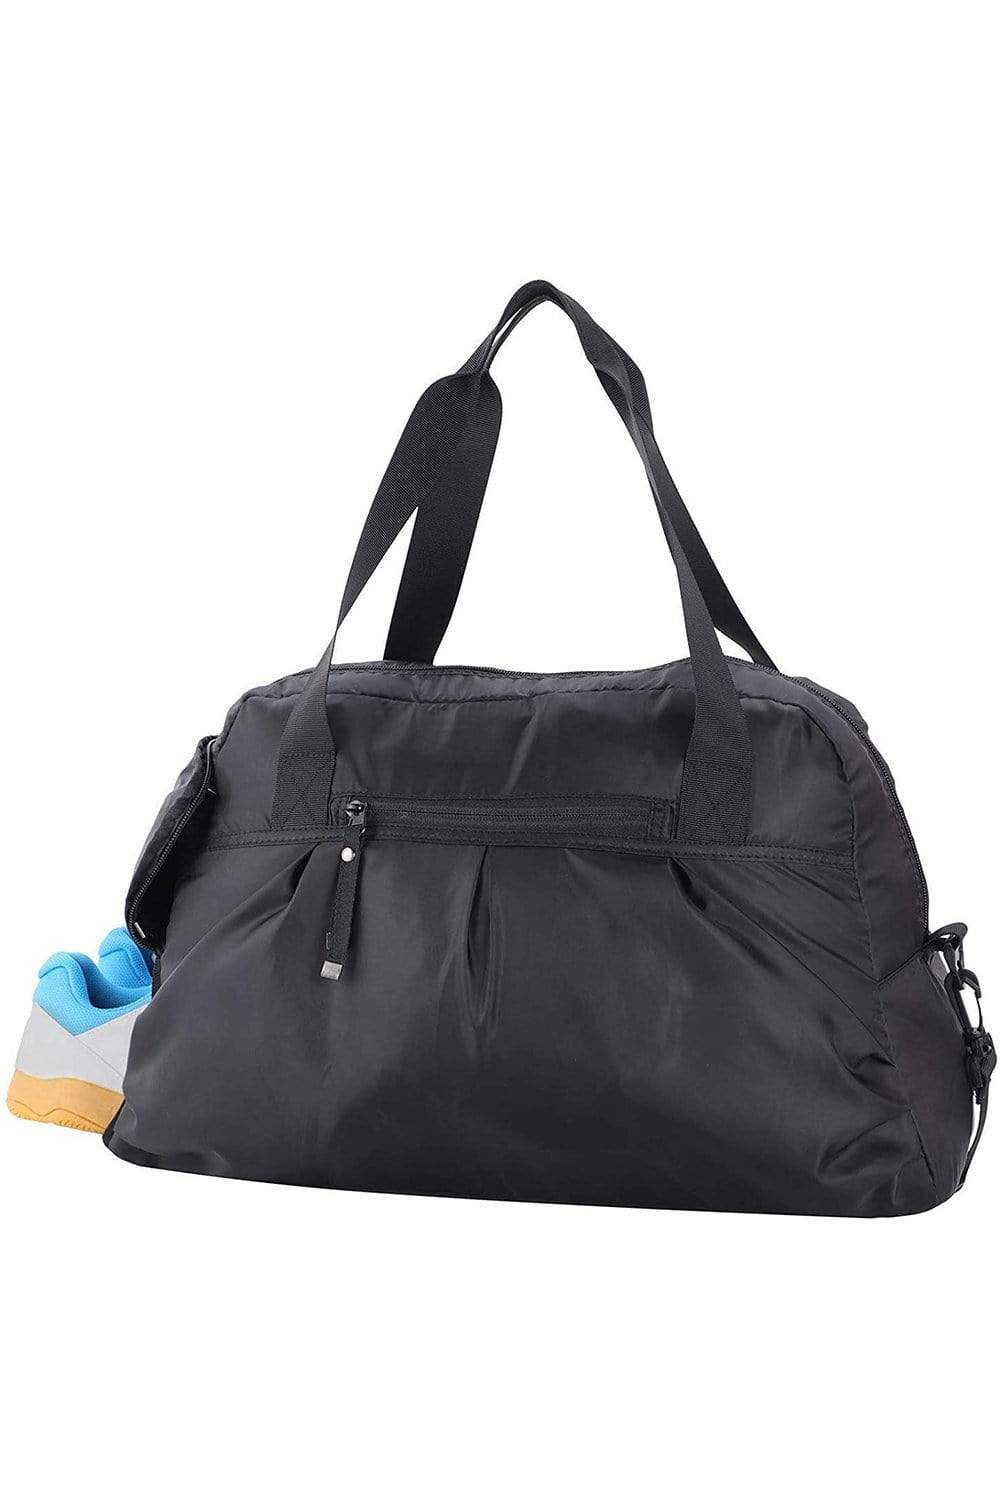 precio carrera falso MIERSPORT Women's Gym Bag with Shoe Compartment Travel Duffel Bag